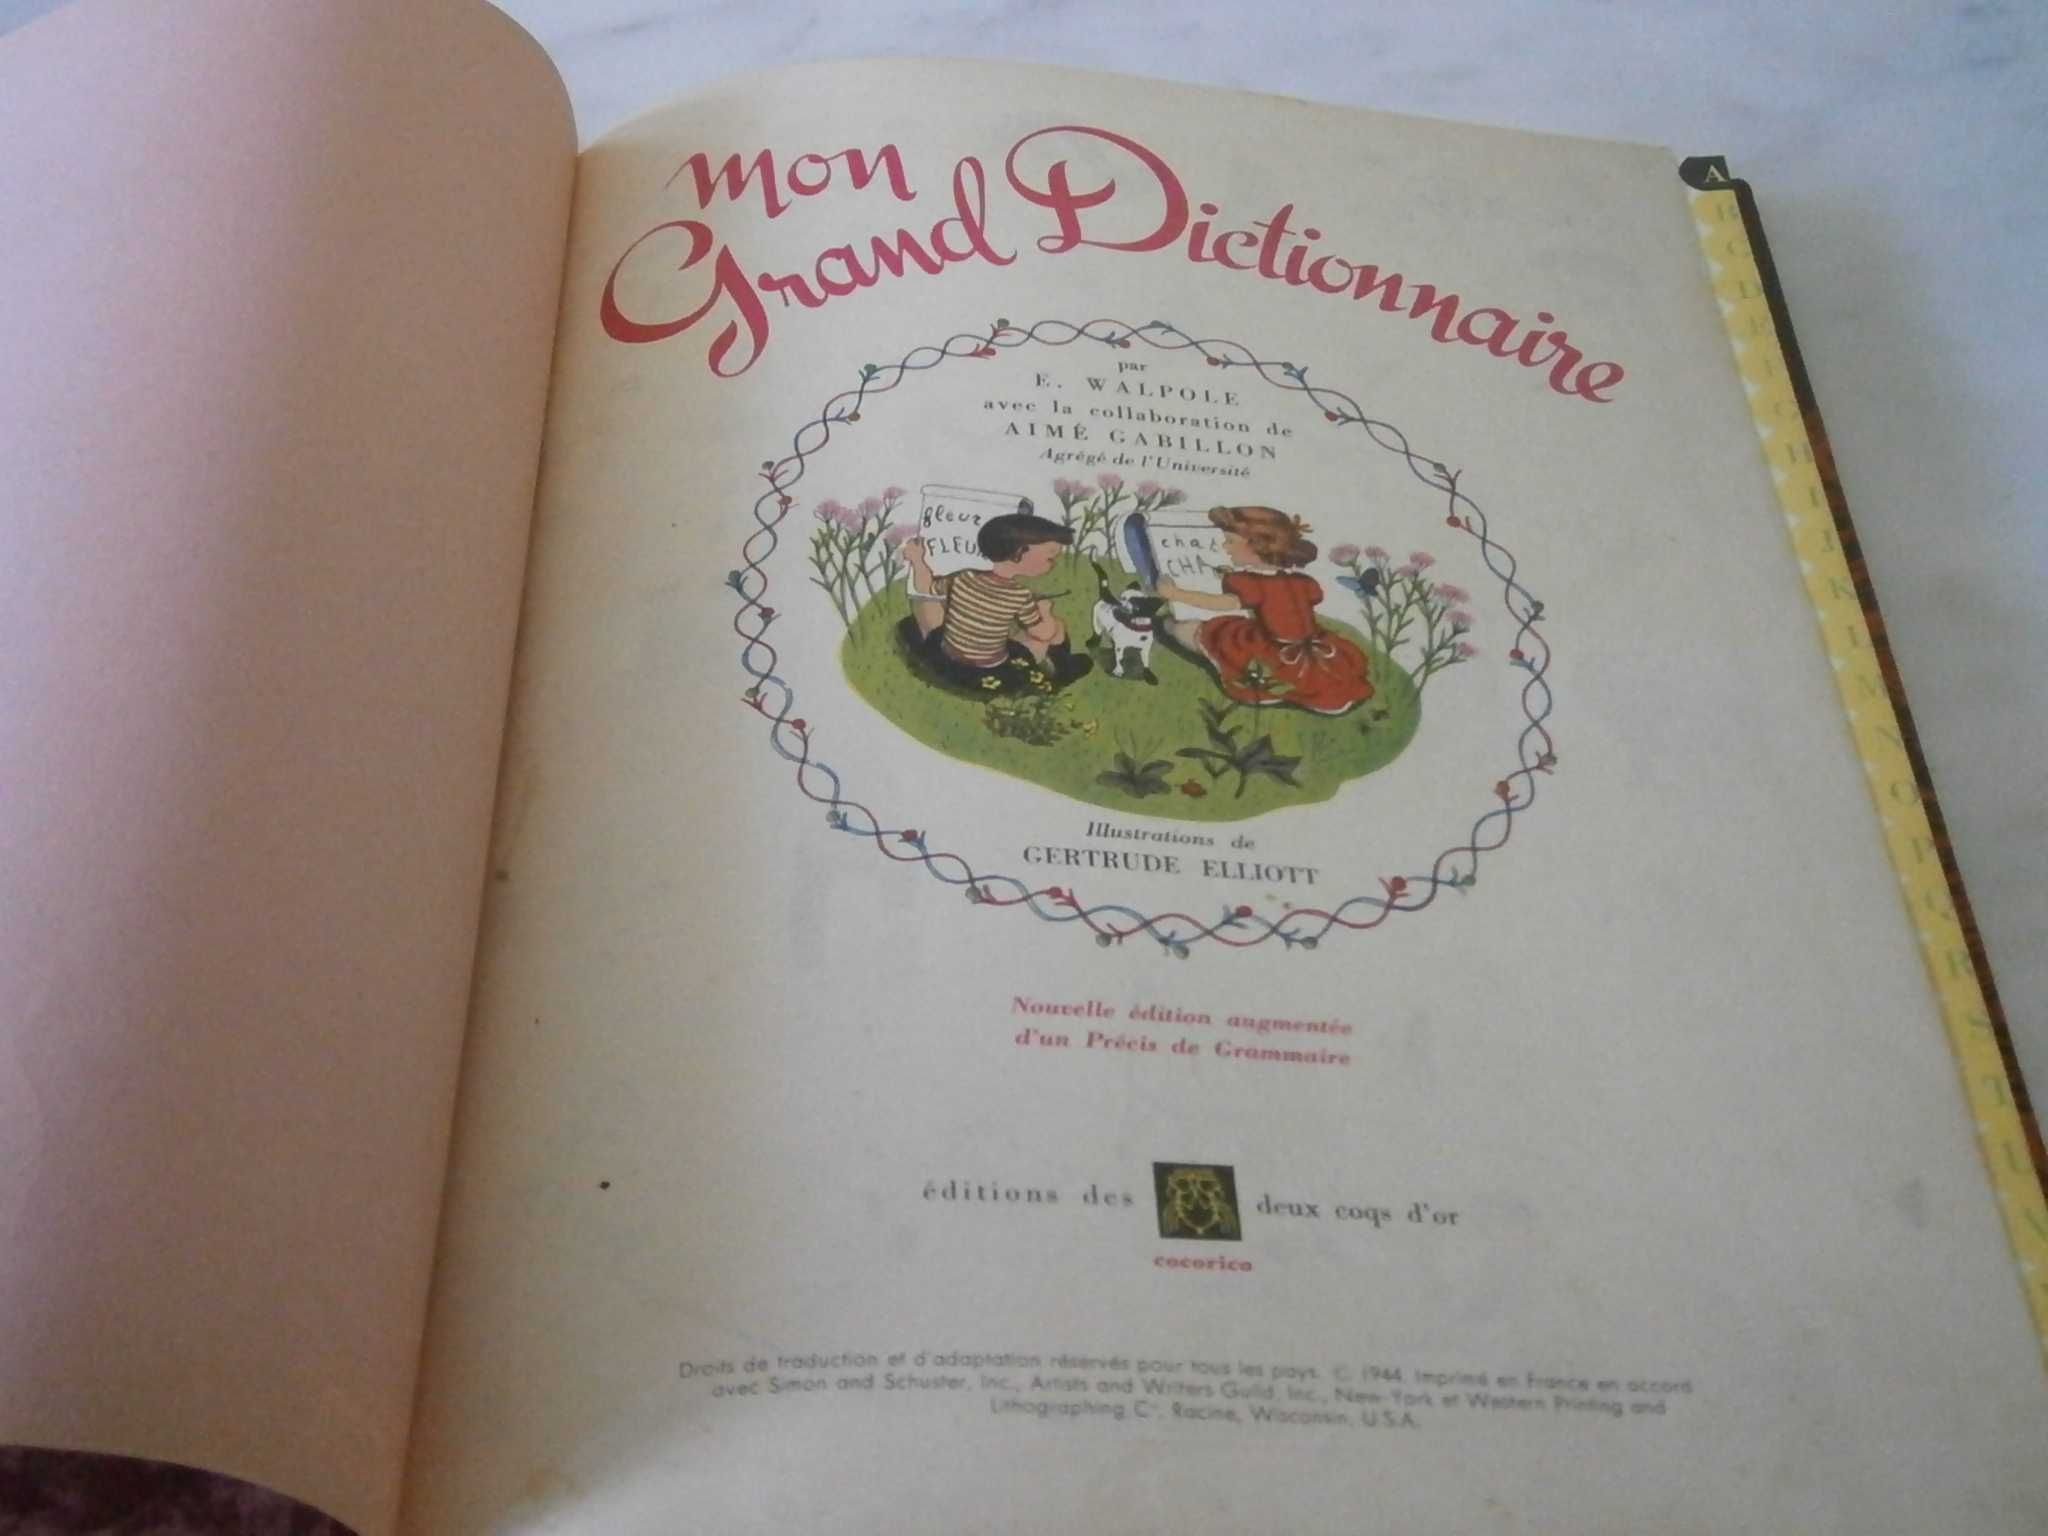 Dicionário “MON GRAND DICTIONNAIRE Français, ano 1944